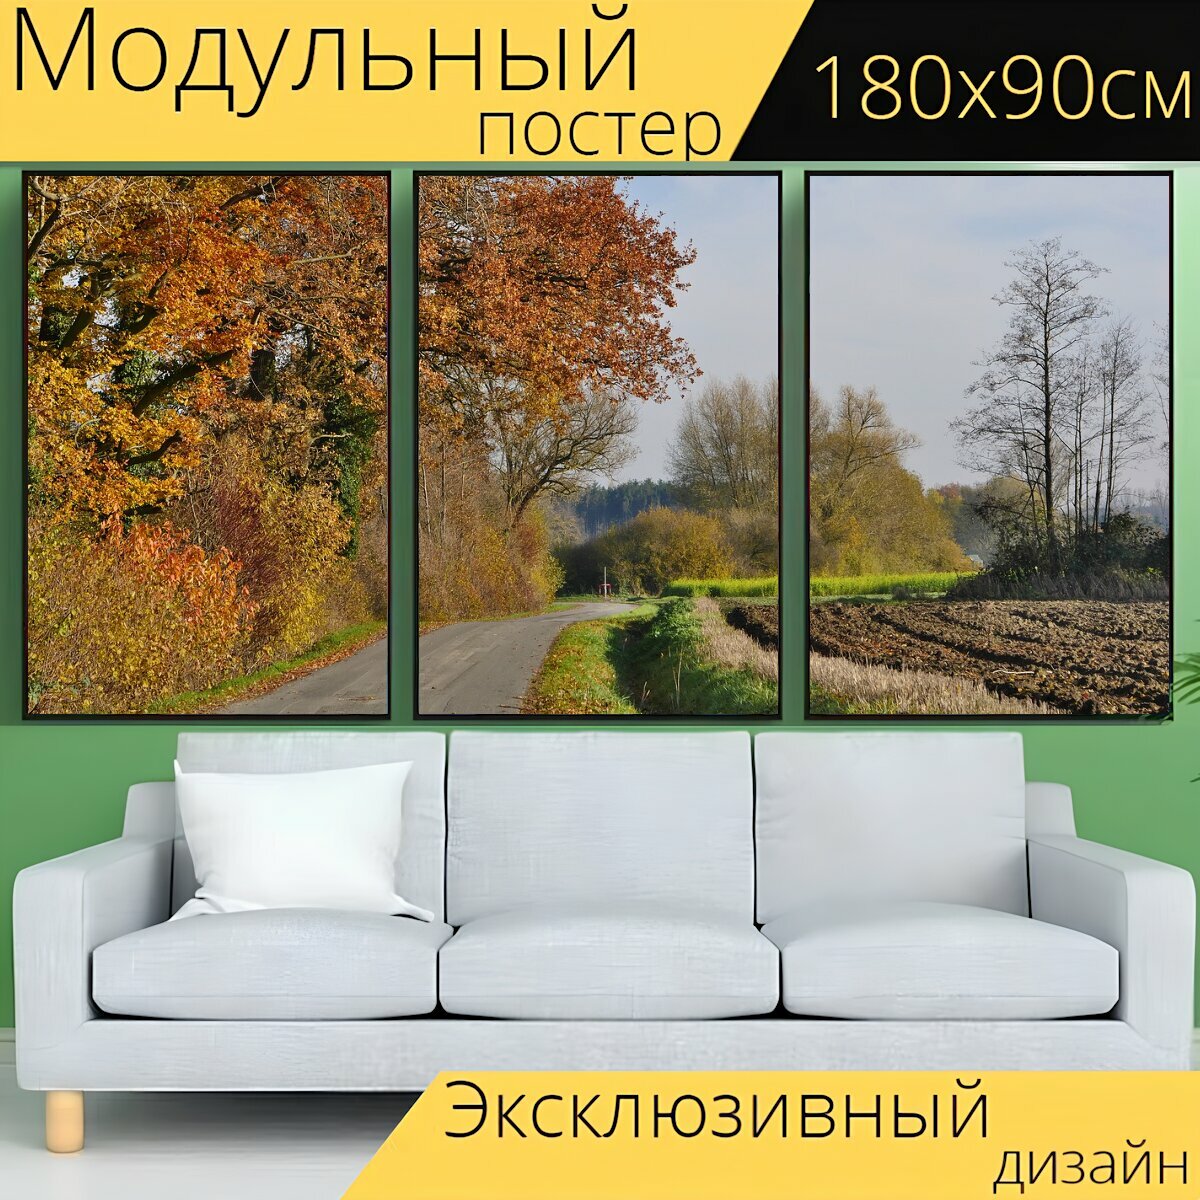 Модульный постер "Поздней осенью, солнечный, мюнстерланд" 180 x 90 см. для интерьера